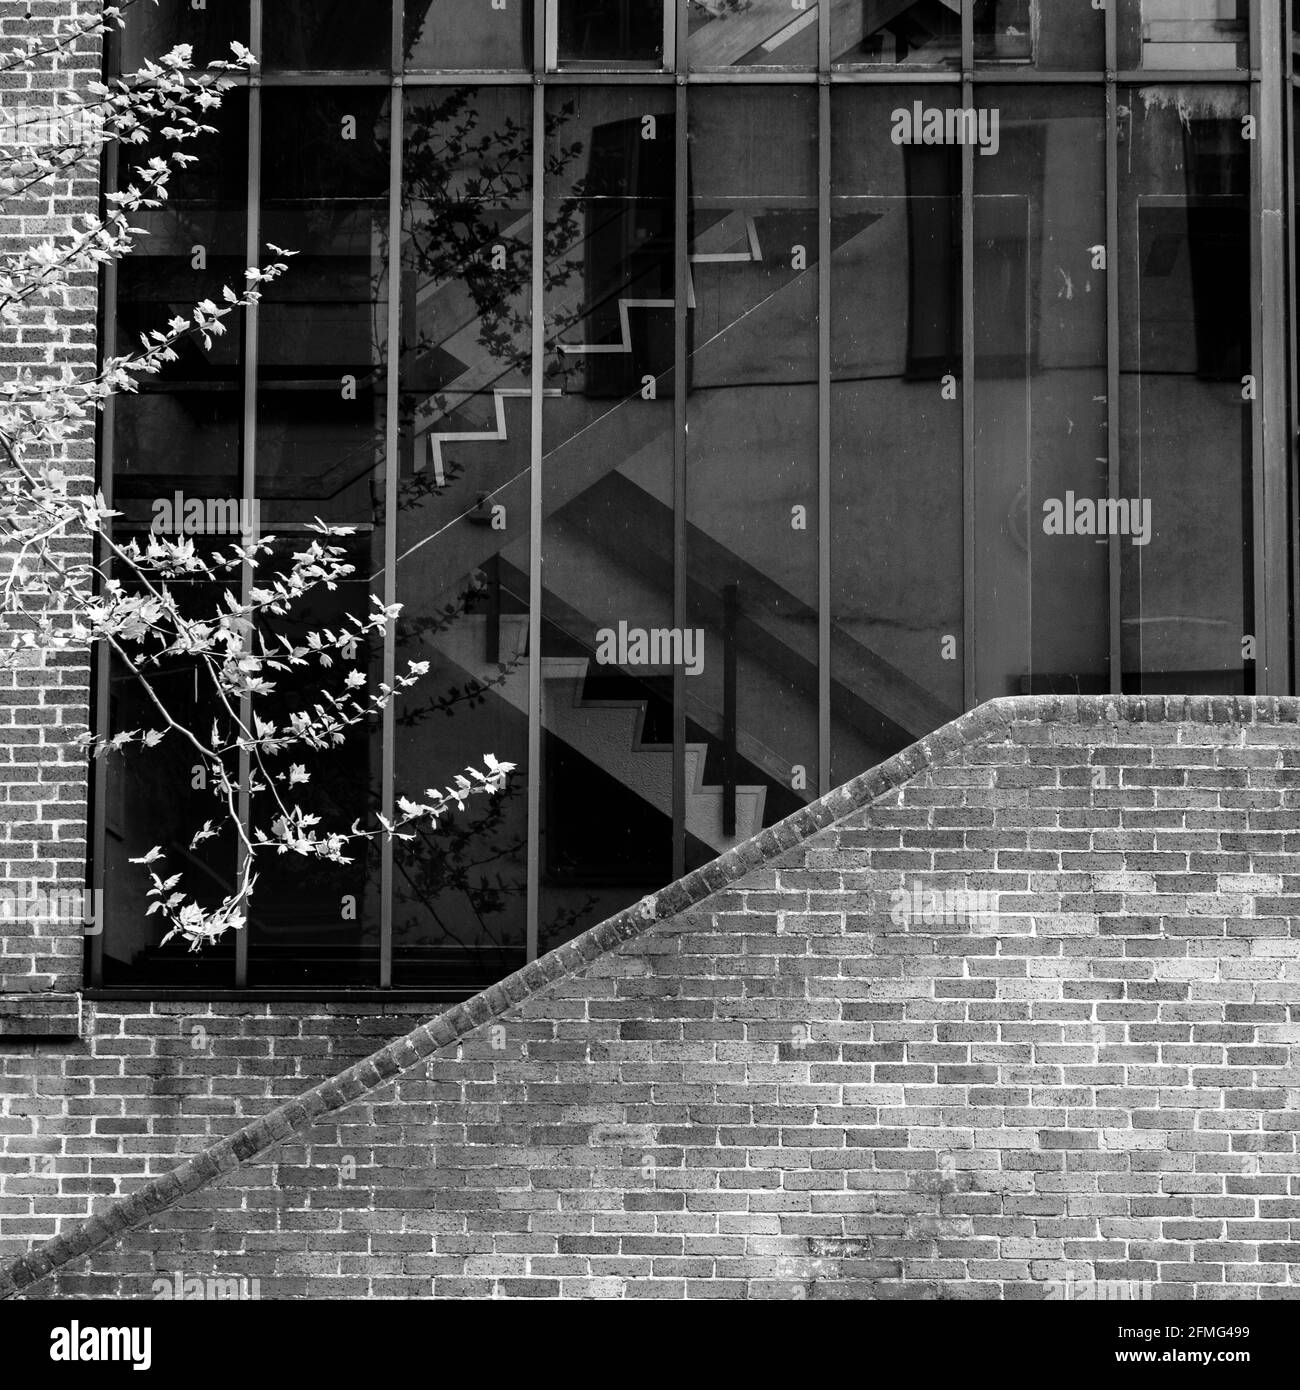 Kingston upon Thames Surrey Londres, Royaume-Uni Mai 07 2021, moderne vitrage architectural caractéristique d'un immeuble de bureau avec angles et pas de personnes Banque D'Images